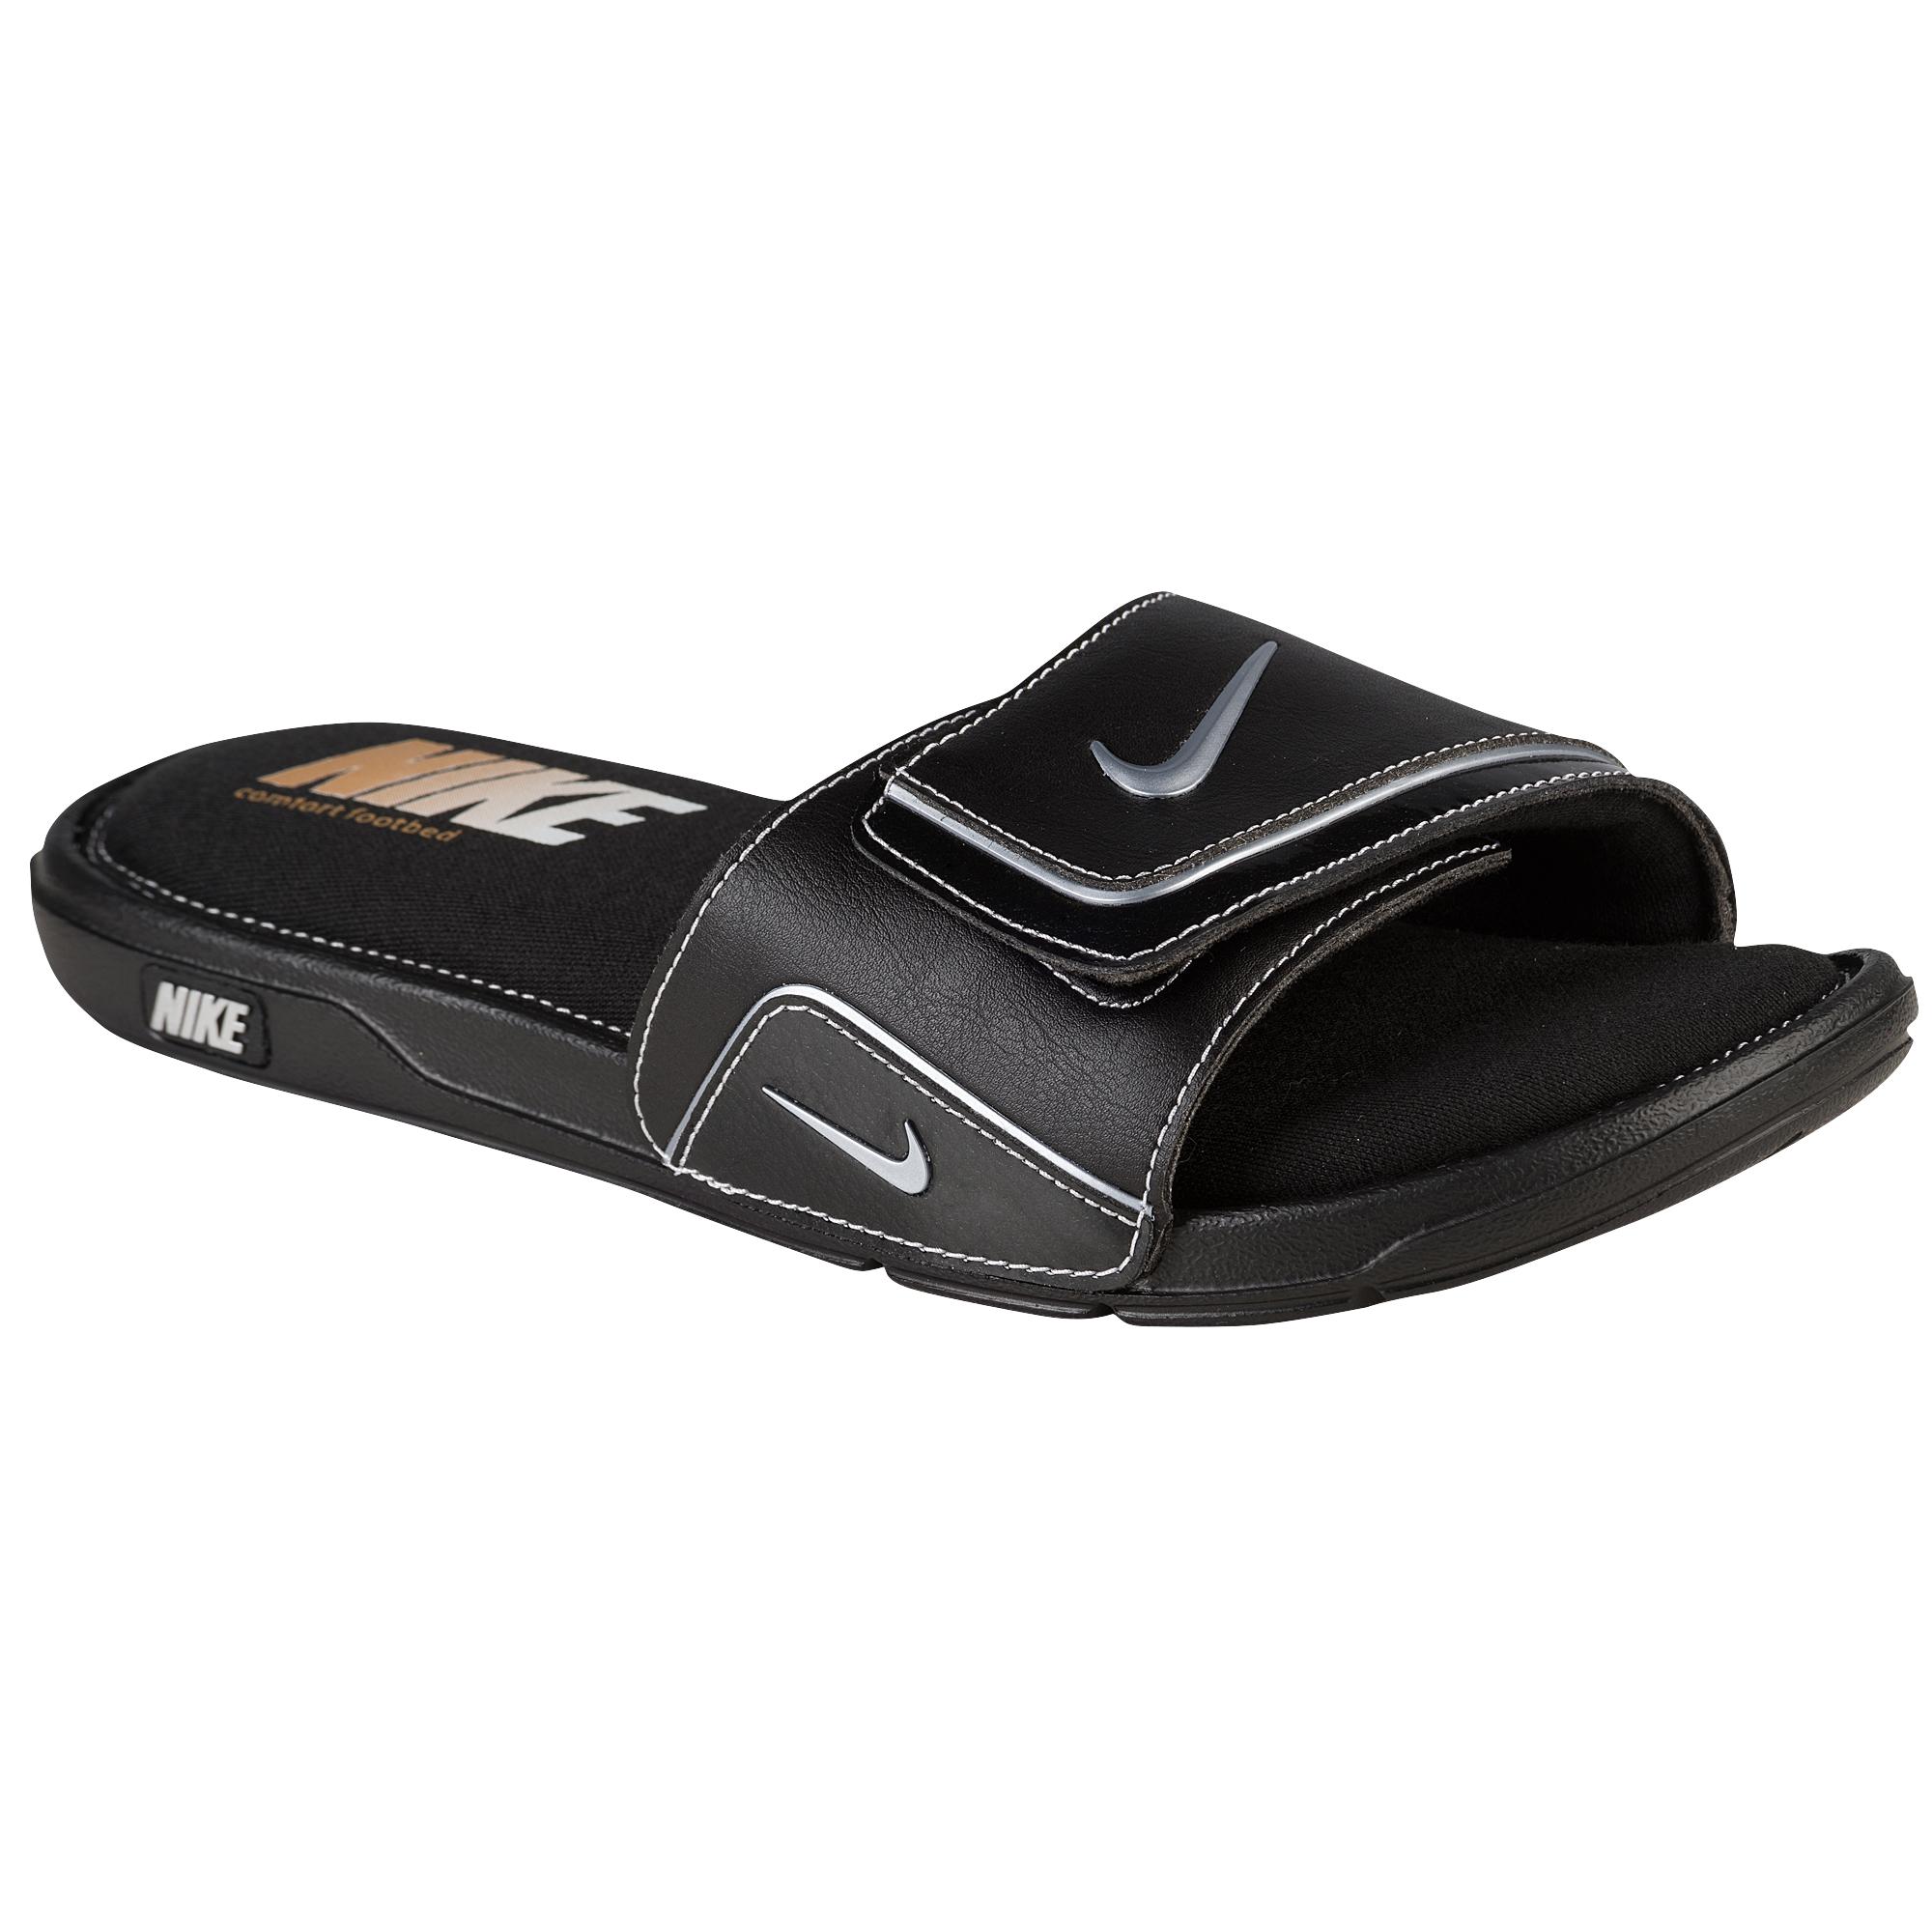 Nike Comfort Slide 2 in Black/Metallic Silver/White (Black) for Men - Lyst